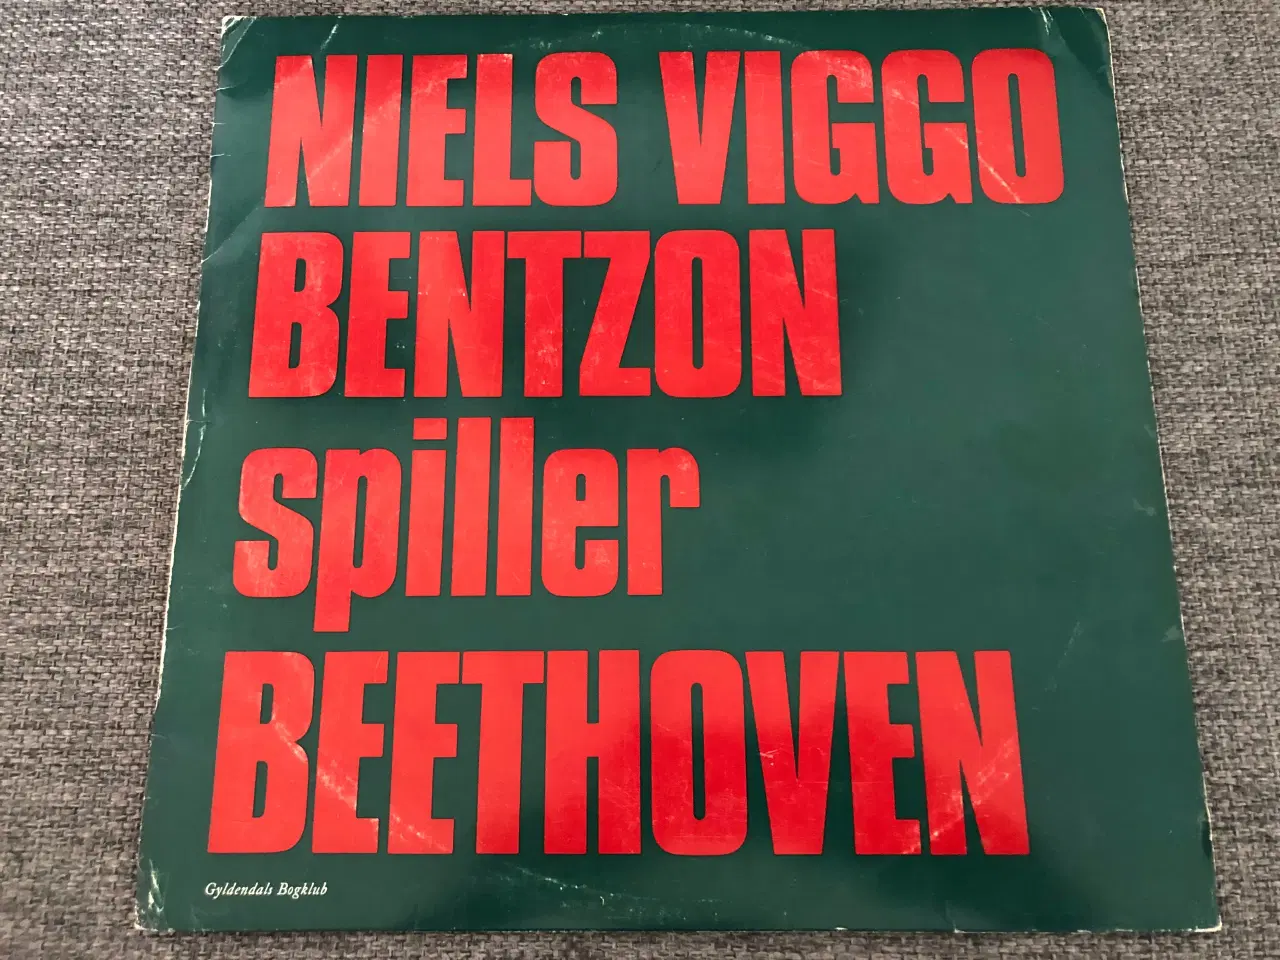 Billede 1 - Niels Viggo Bentzon spiller Beethoven